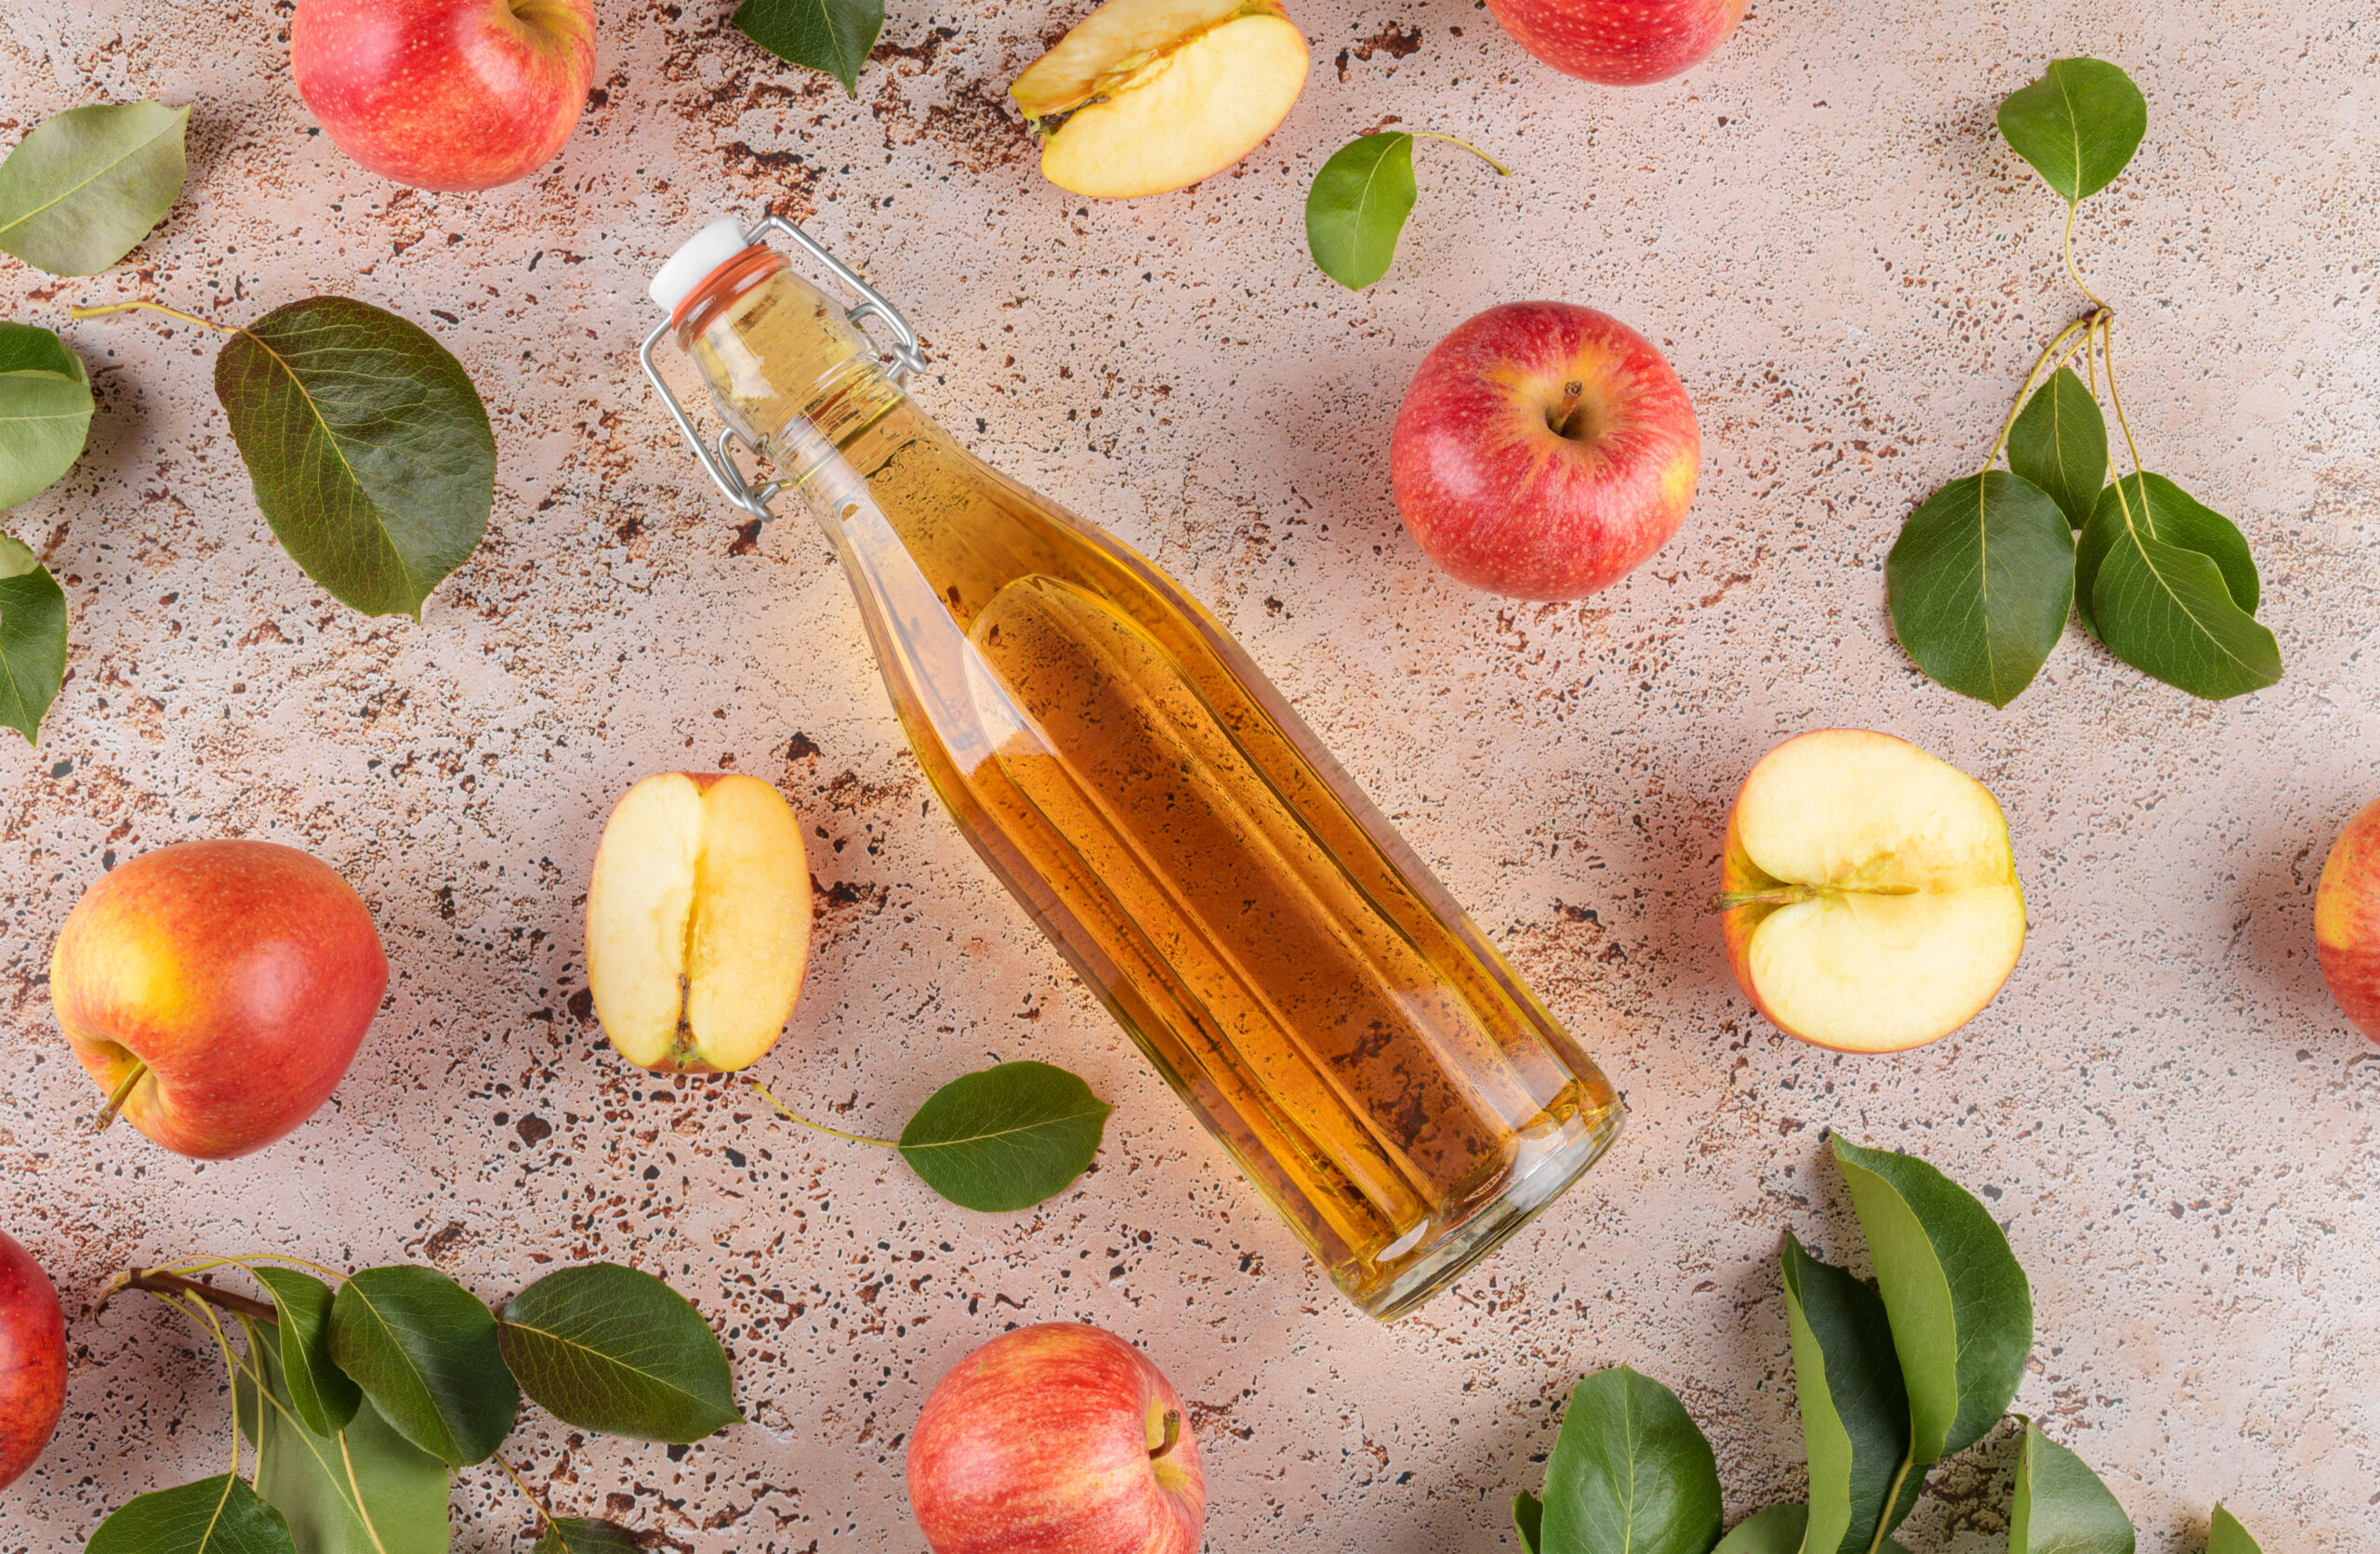 Apfelessig in einer Glasflasche neben Äpfeln auf einem grauen Untergrund